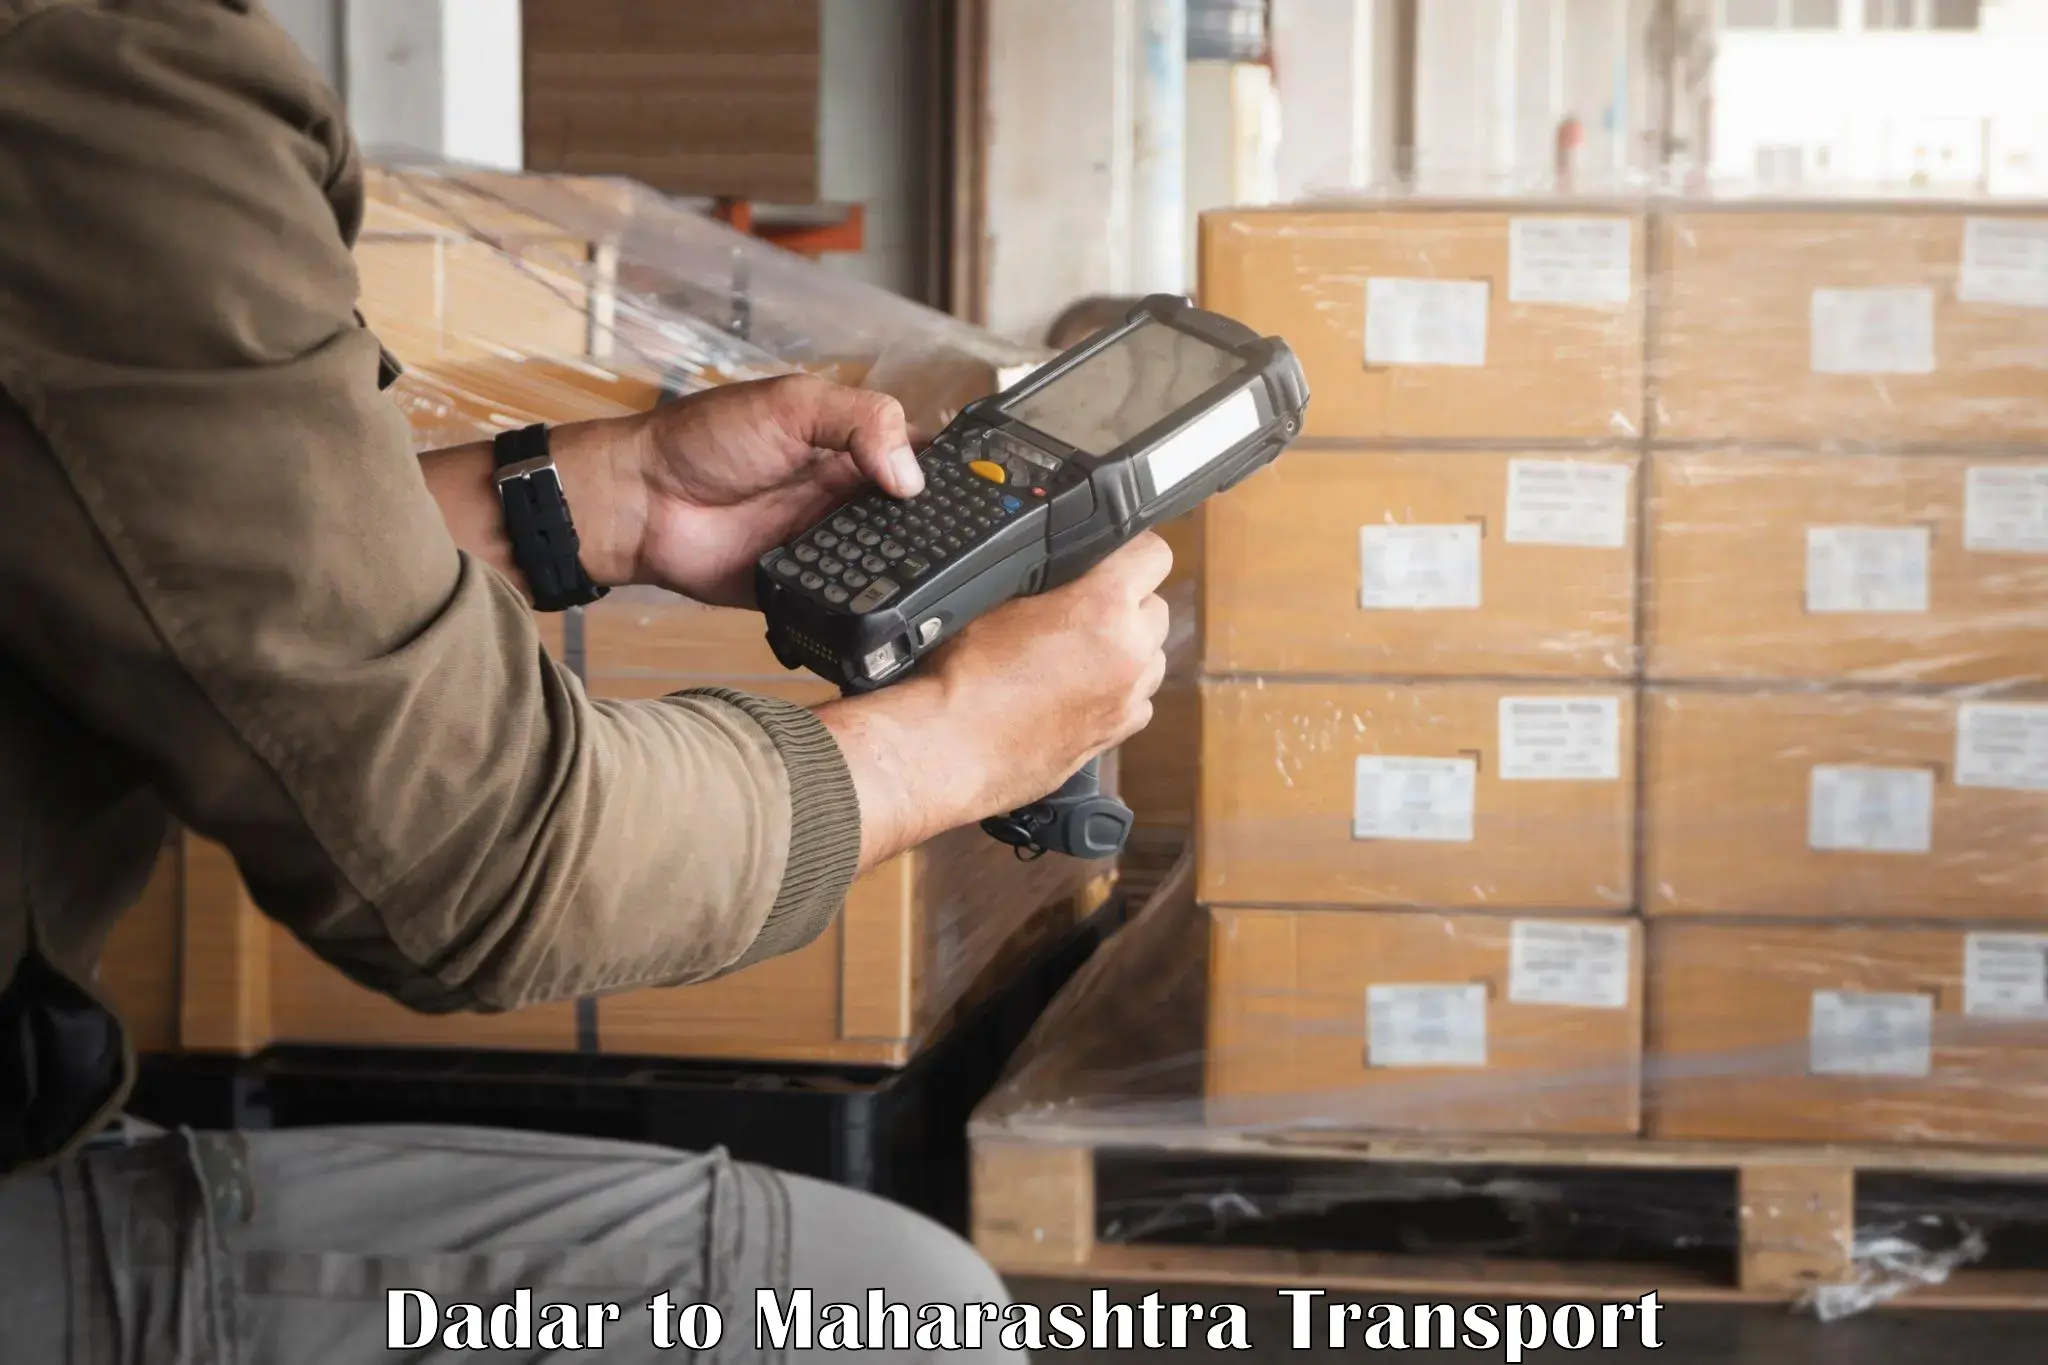 Furniture transport service Dadar to Ahmednagar